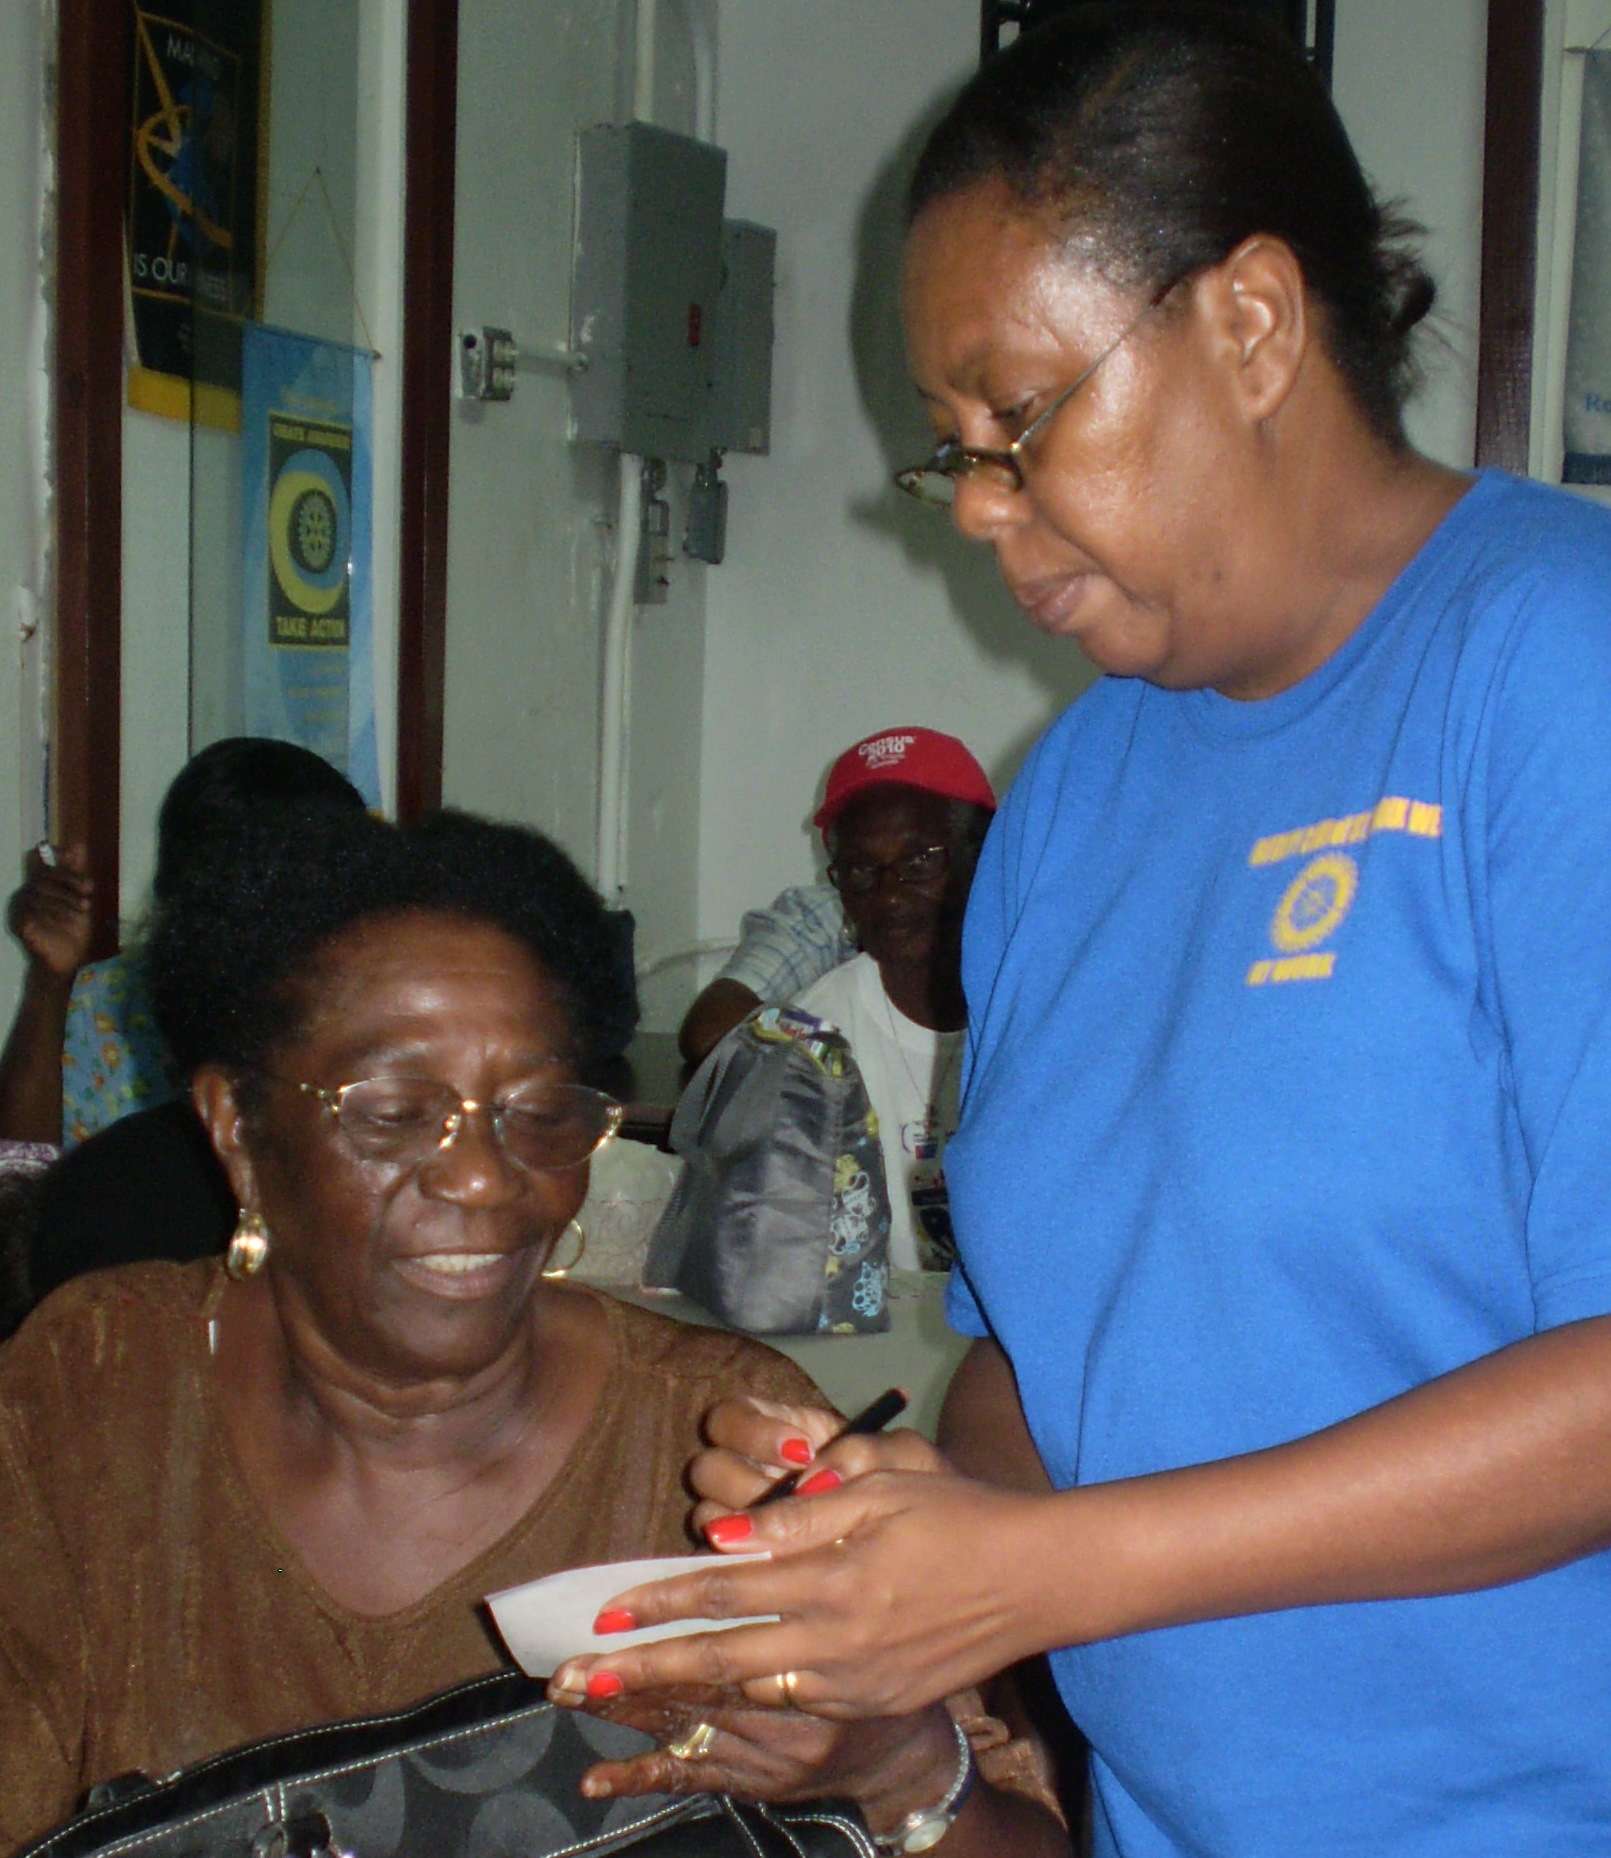 Rotary President Deborah Howell (right) checking Marcelle Sorhaindo's bingo card.